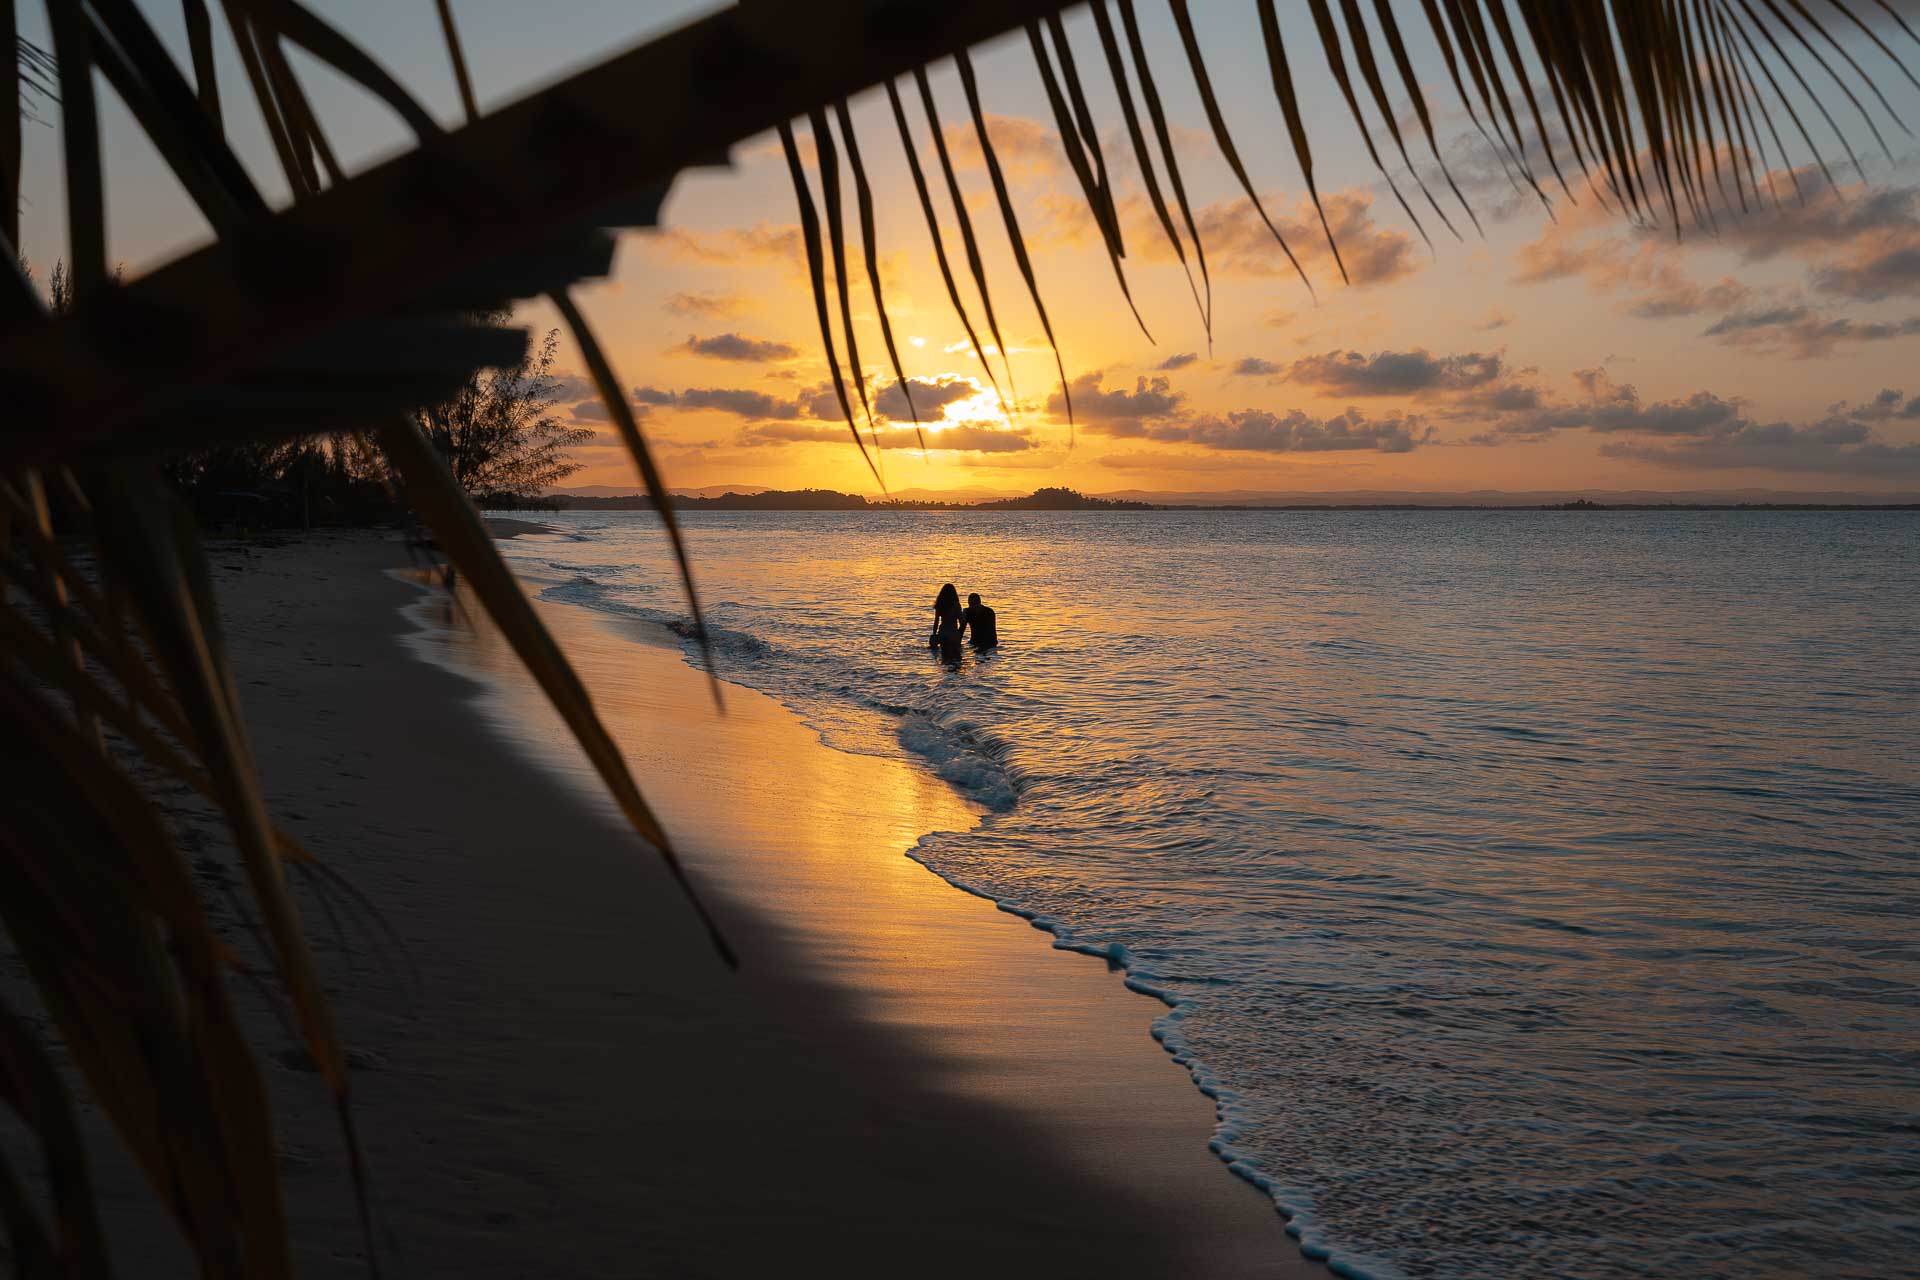 Sol se pondo no horizonte com um casal no mar e uma folha de coqueiro atravessando a foto